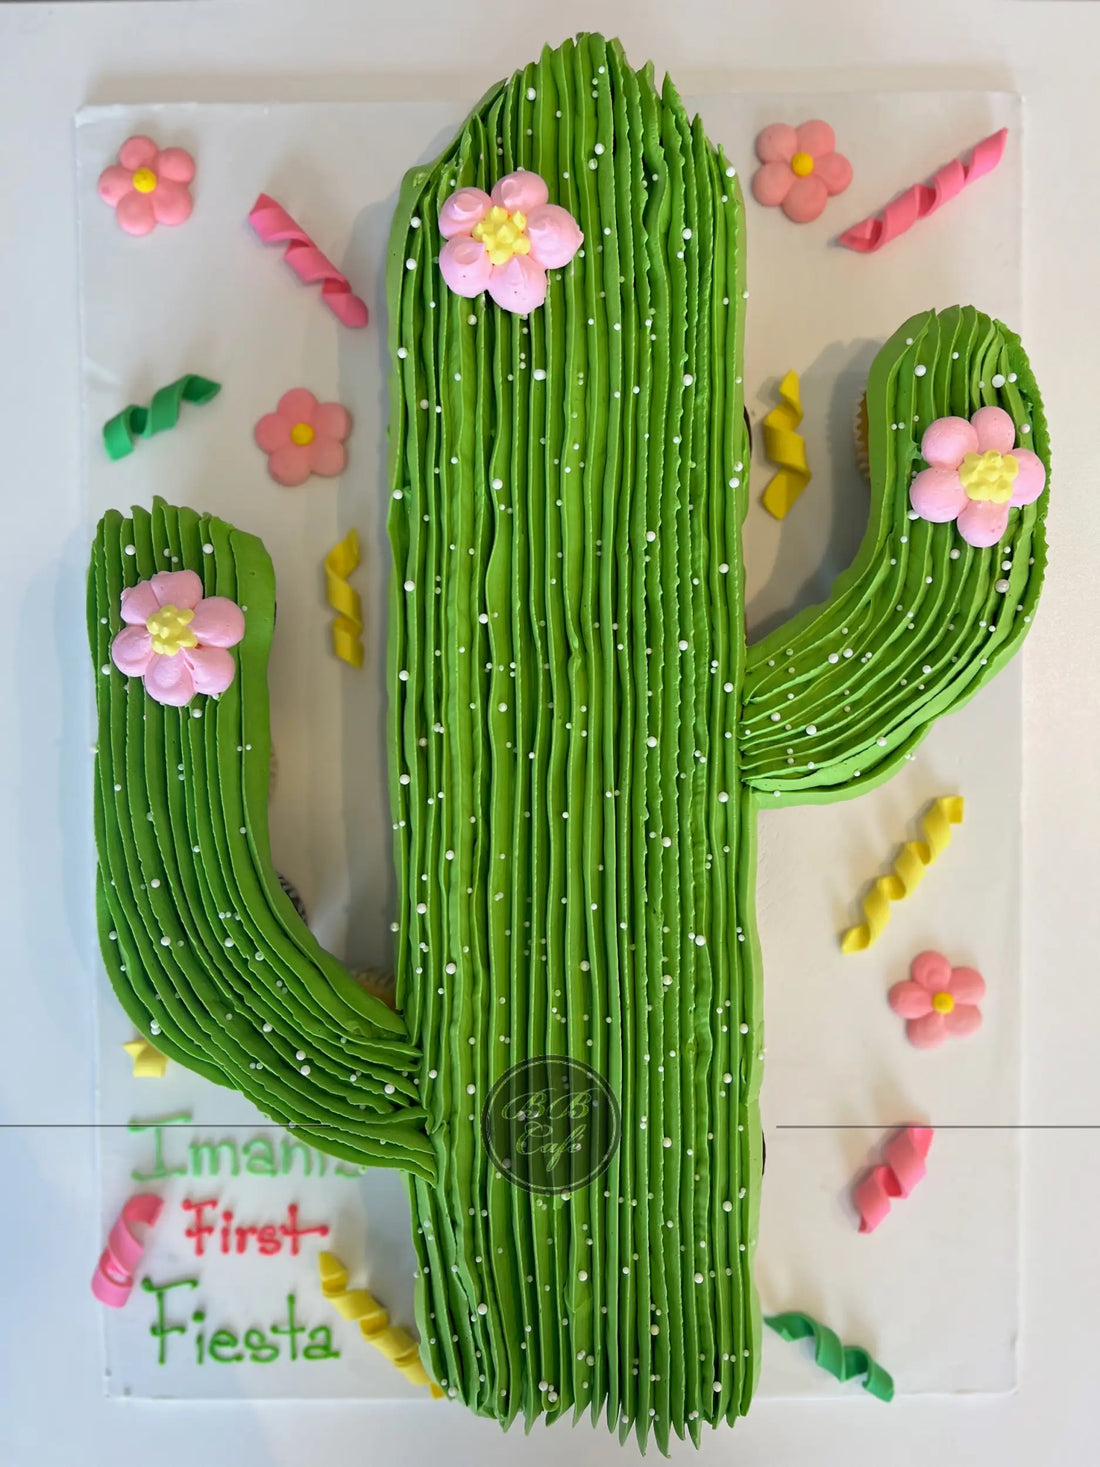 Pull - apart cactus cupcake